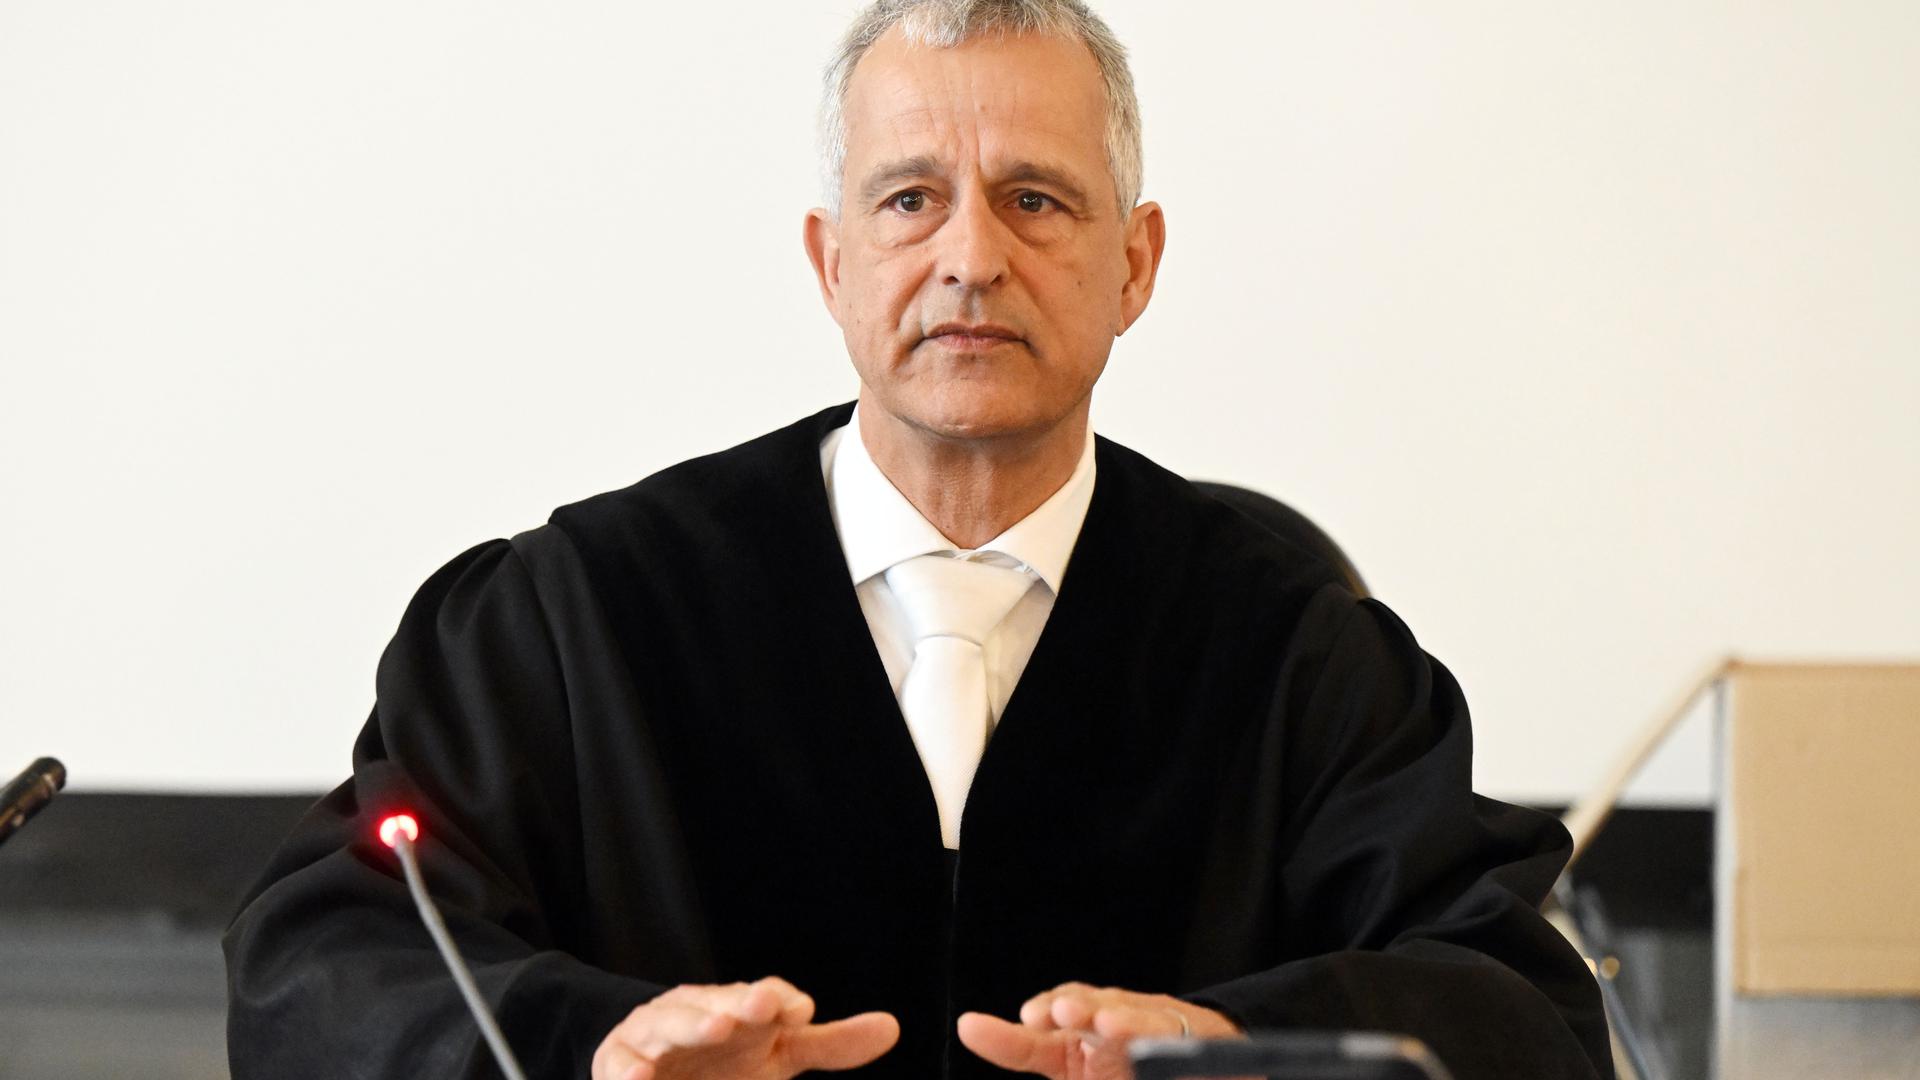 Prozess gegen den dm-Erpresser:  Fernando Sanchez-Hermosilla, Vorsitzender Richter am Landgericht Karlsruhe, eröffnet die Verhandlung zu einer mutmaßlichen Erpressung. Dem 53-Jährigen Angeklagten wird vorgeworfen, einen Sprengstoffanschlag auf die Filiale eines Unternehmens verübt und weitere Anschläge angedroht haben. Laut Anklage erpresste er mehrere Hunderttausend Euro in Bitcoin. 